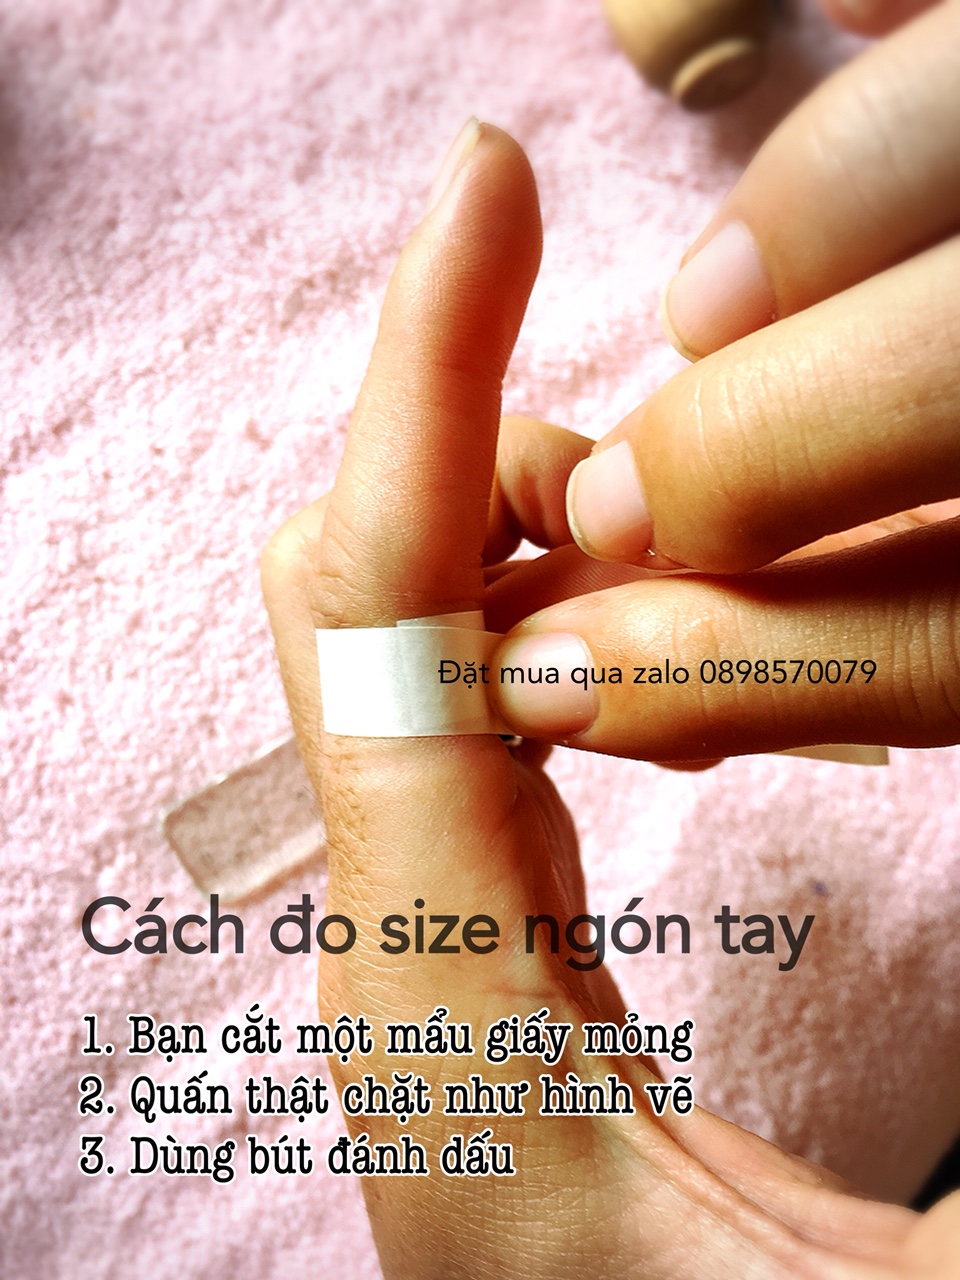 Cách đo size ngón tay đeo nhẫn - bước 1